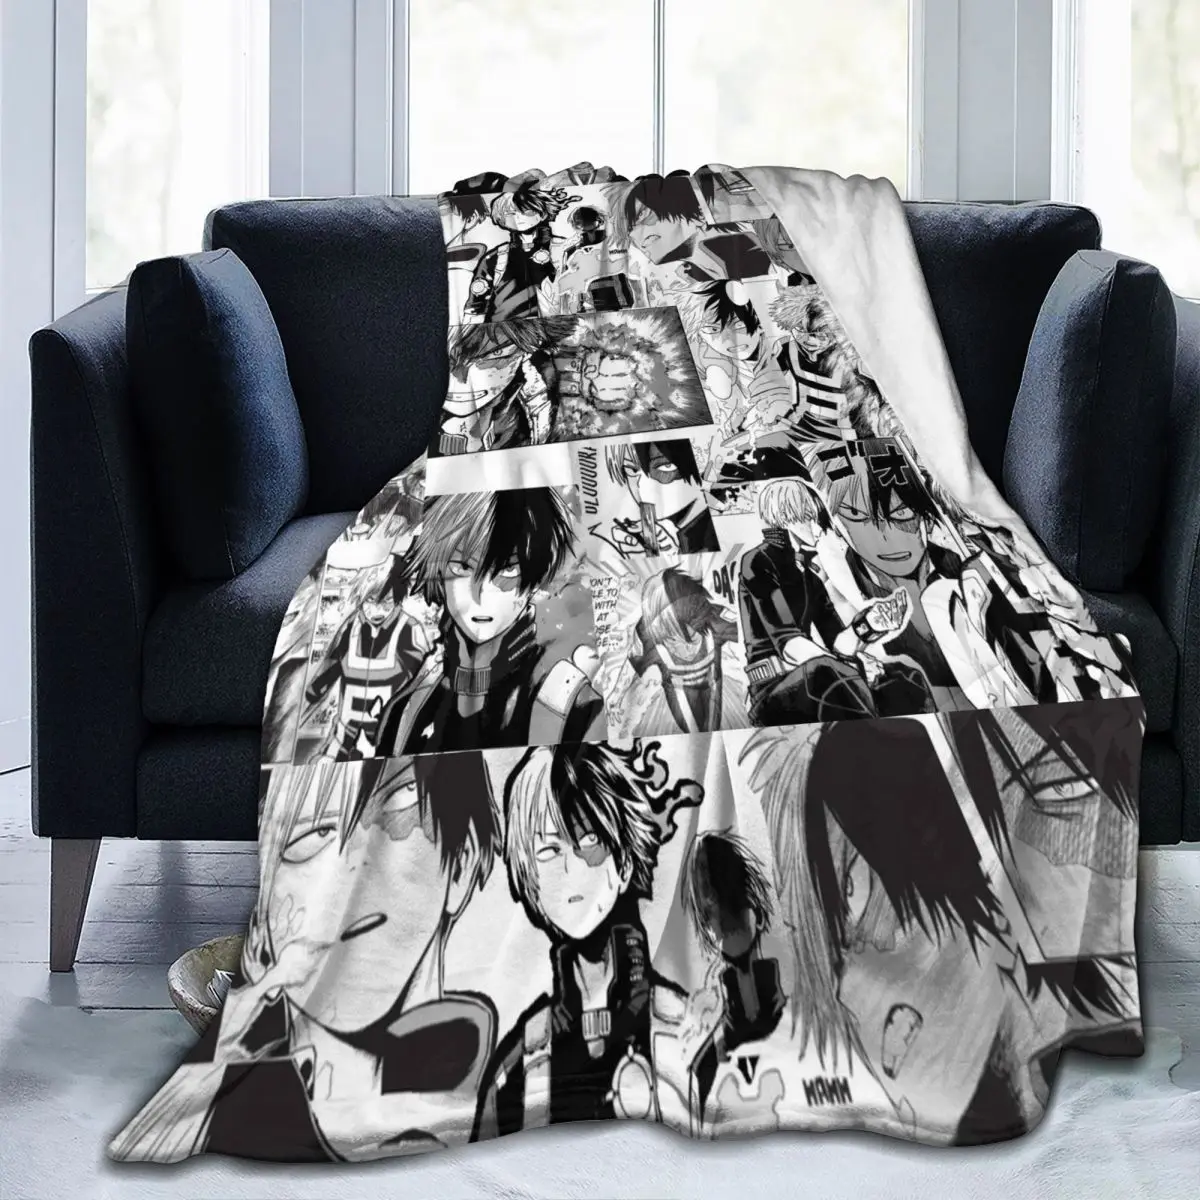 

Одеяло Todoroki Shoto, Текстильный декор, Аниме Манга моя геройская академия, унисекс, пледы для спальни, офисные покрывала